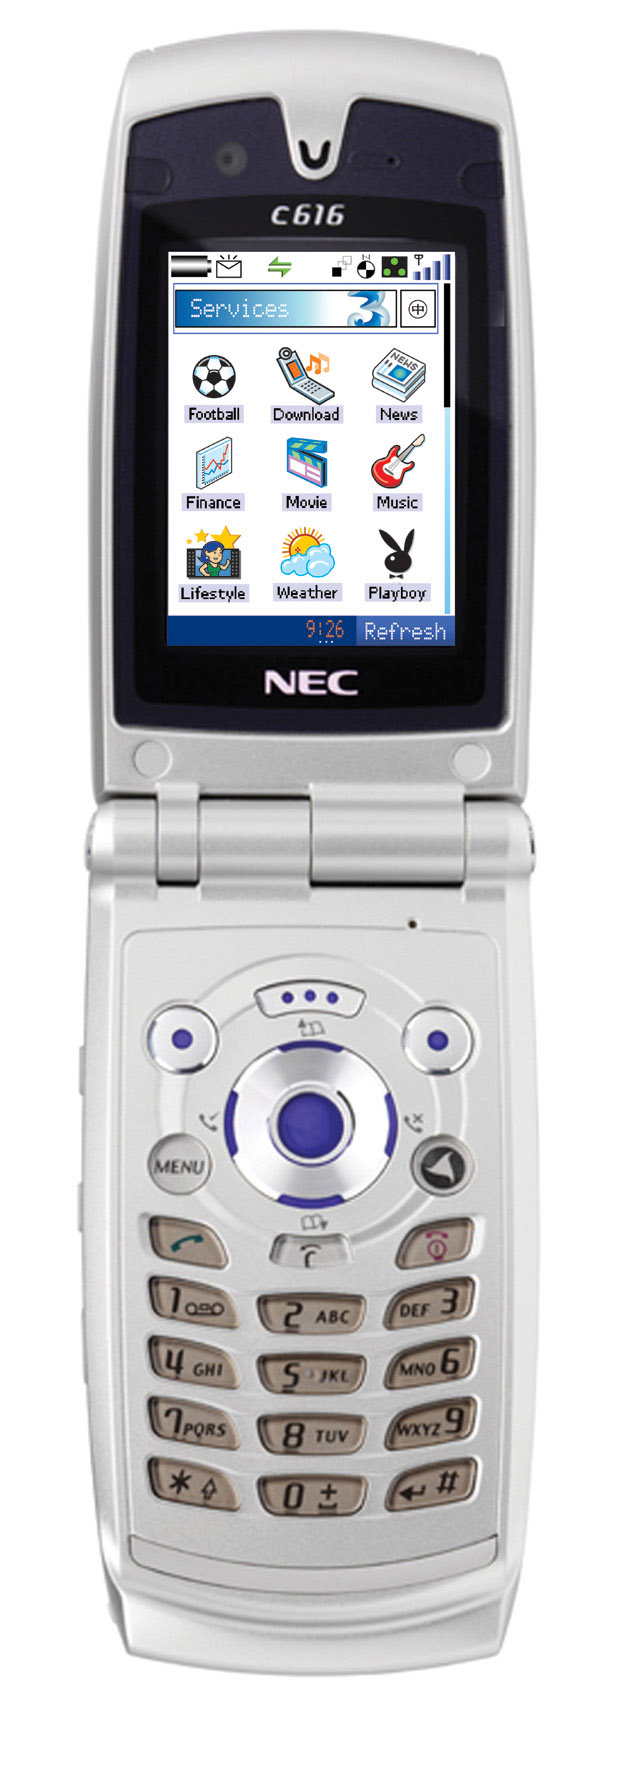 NEC 3G phone